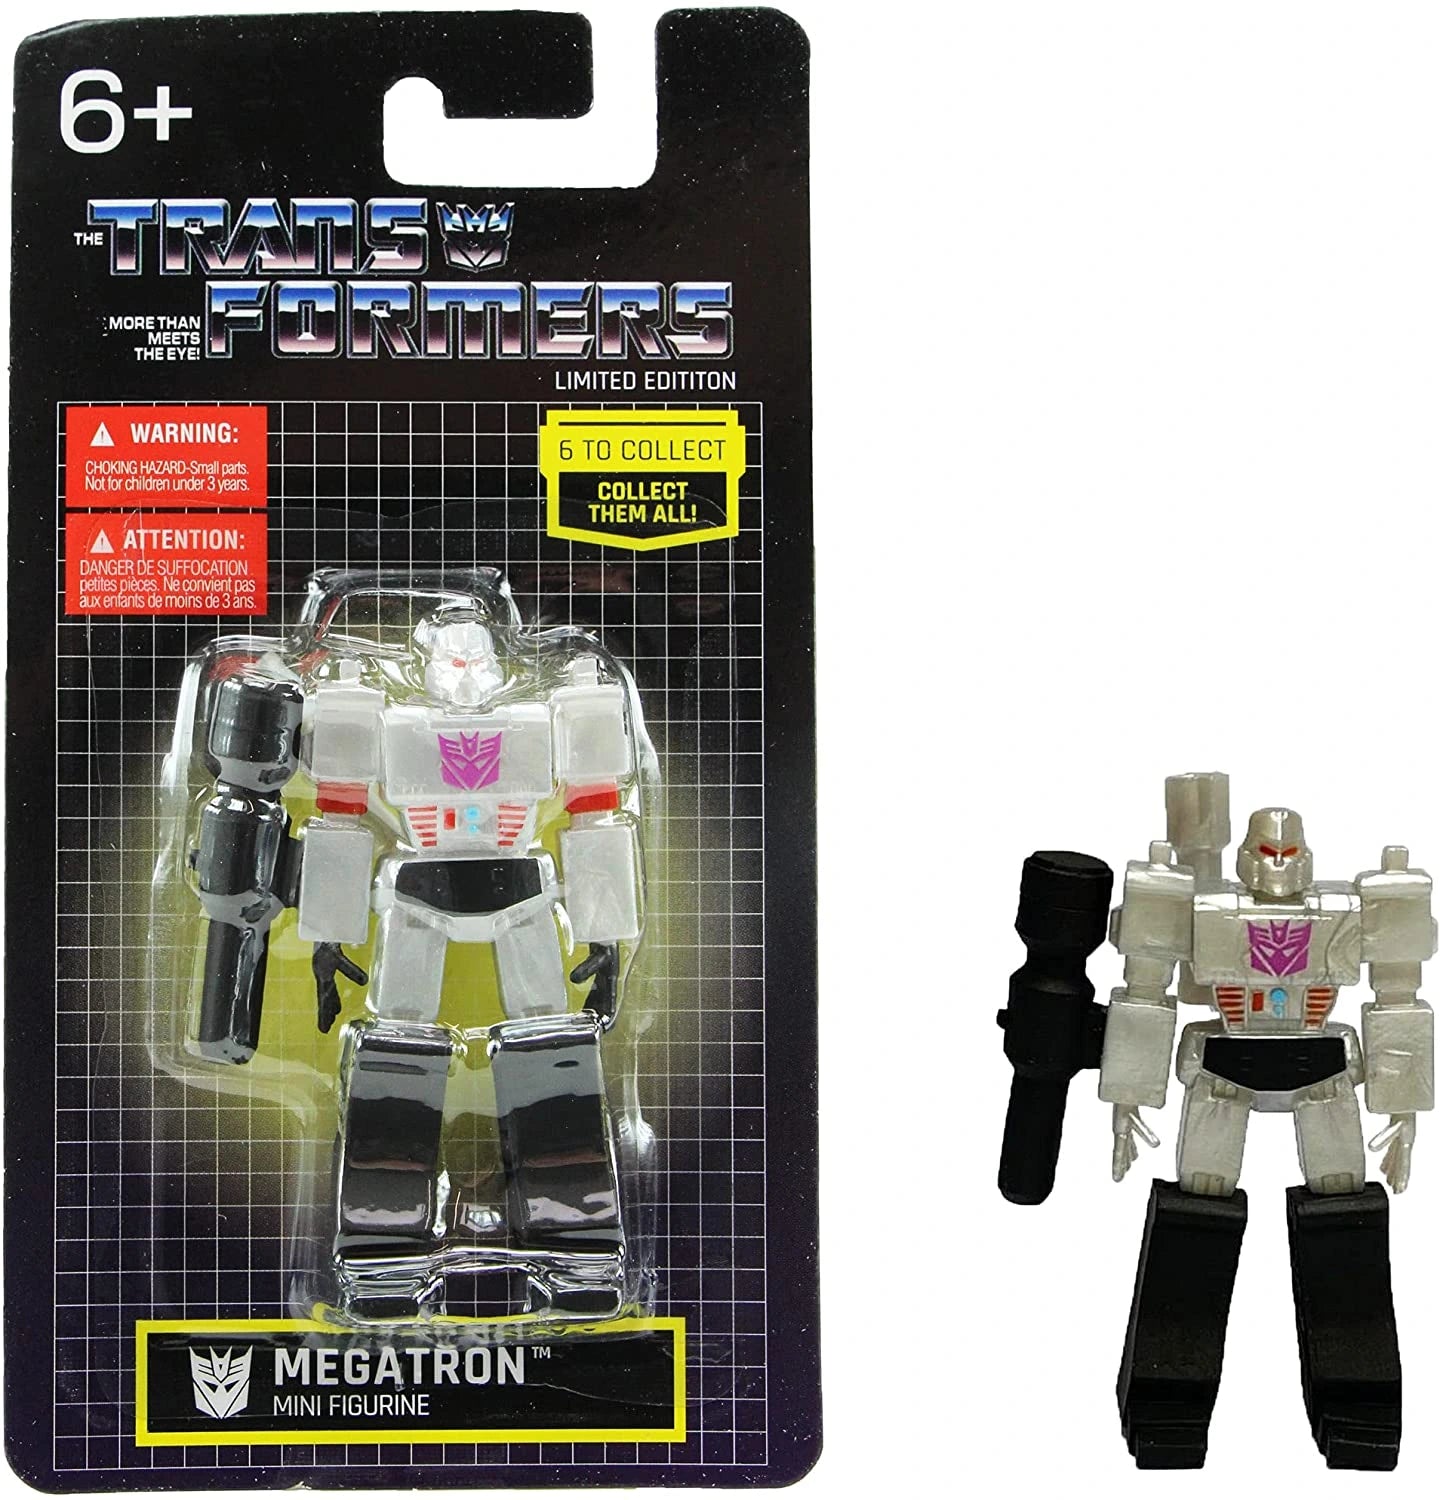 Transformers Decepticons 2.5" Mini Figure Bundle - Starscream, Megatron & Soundwave (Limited Edition) - Toptoys2u